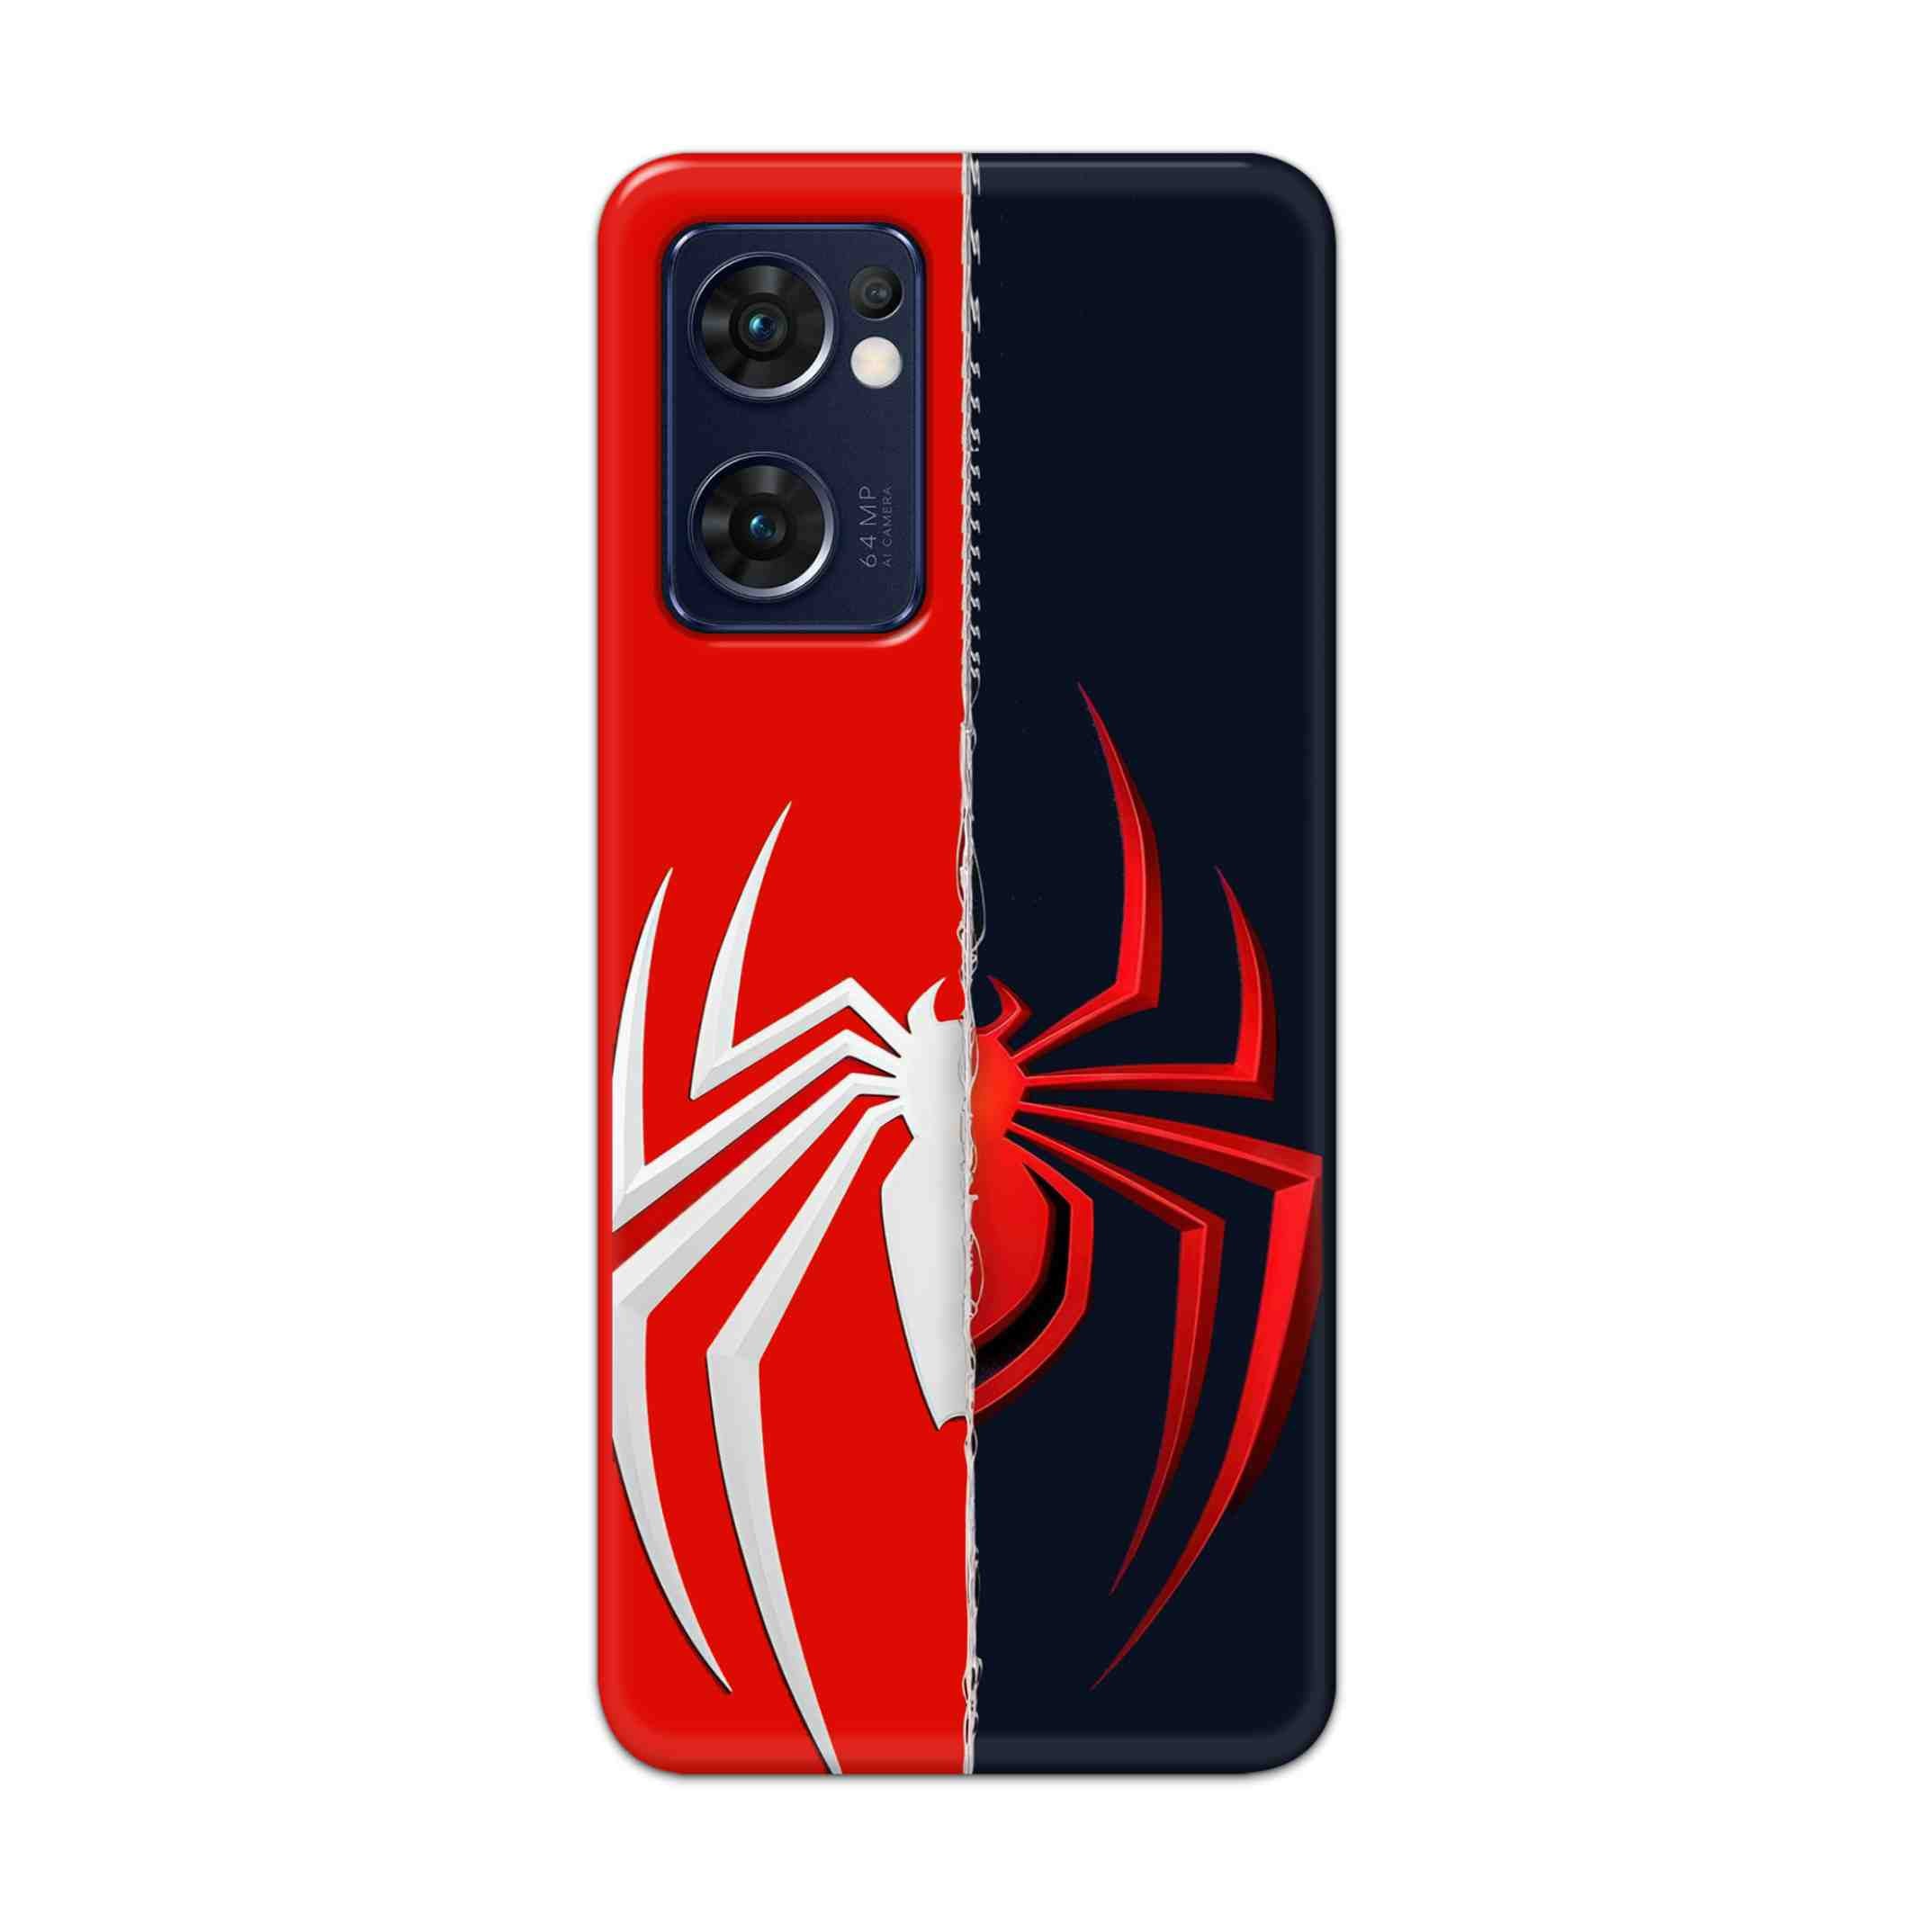 Buy Spademan Vs Venom Hard Back Mobile Phone Case Cover For Reno 7 5G Online